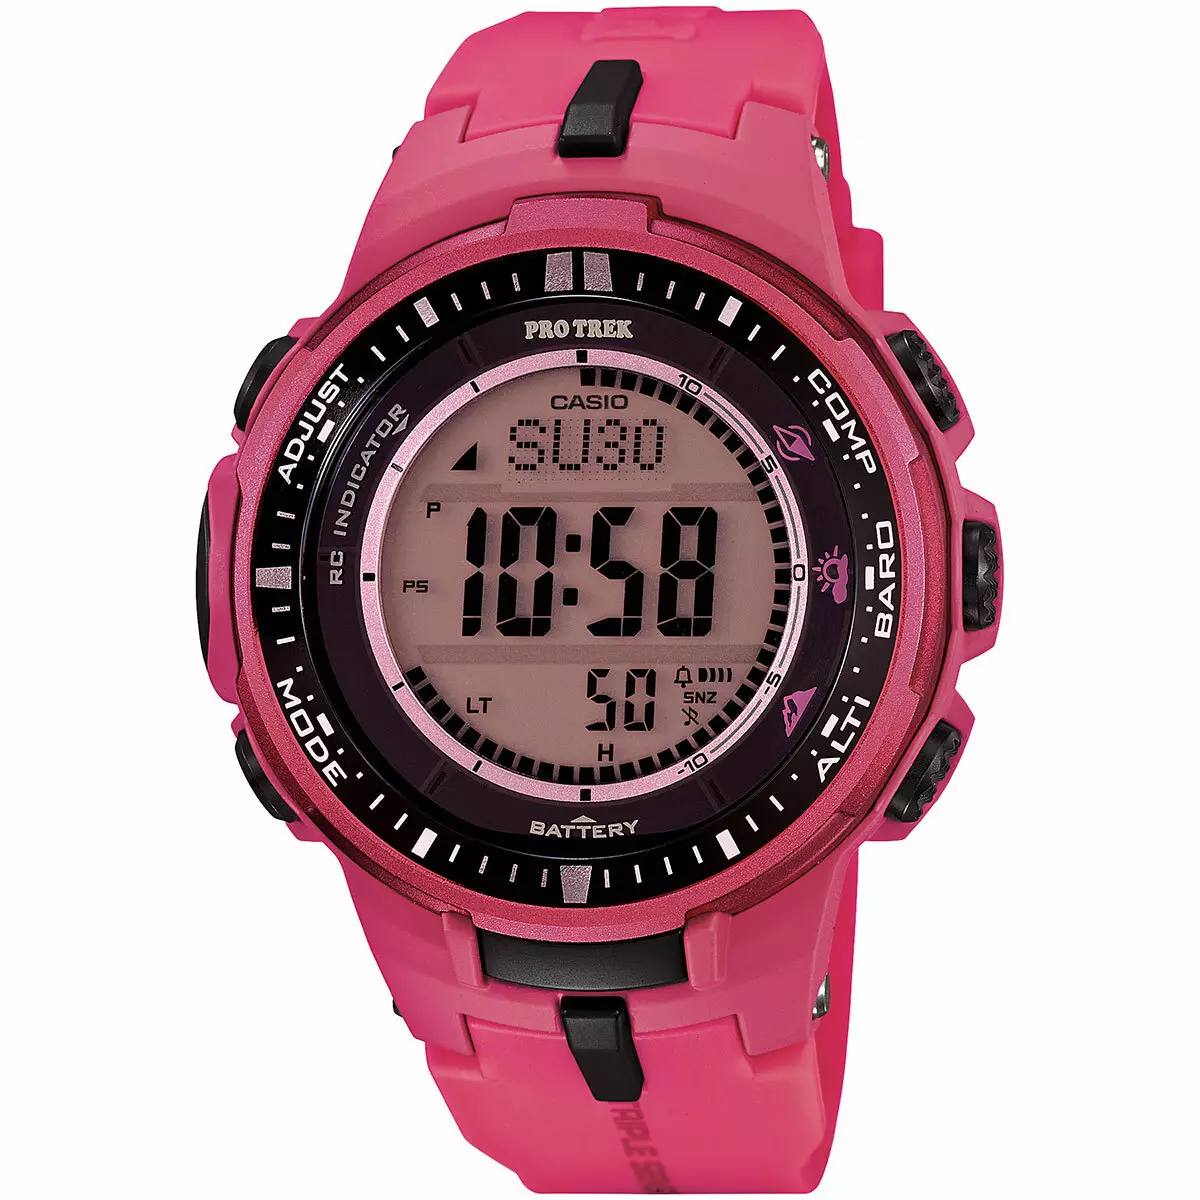 વિમેન્સ Wristwatches Casio (107 ફોટા): જી-શોક, ઇમારત અને પ્રોટ્રેક, આવરણવાળા, સ્માર્ટ અને ઇલેક્ટ્રોનિક મોડલ્સ, કંકણને કેવી રીતે ટૂંકાવી શકાય છે 3554_50